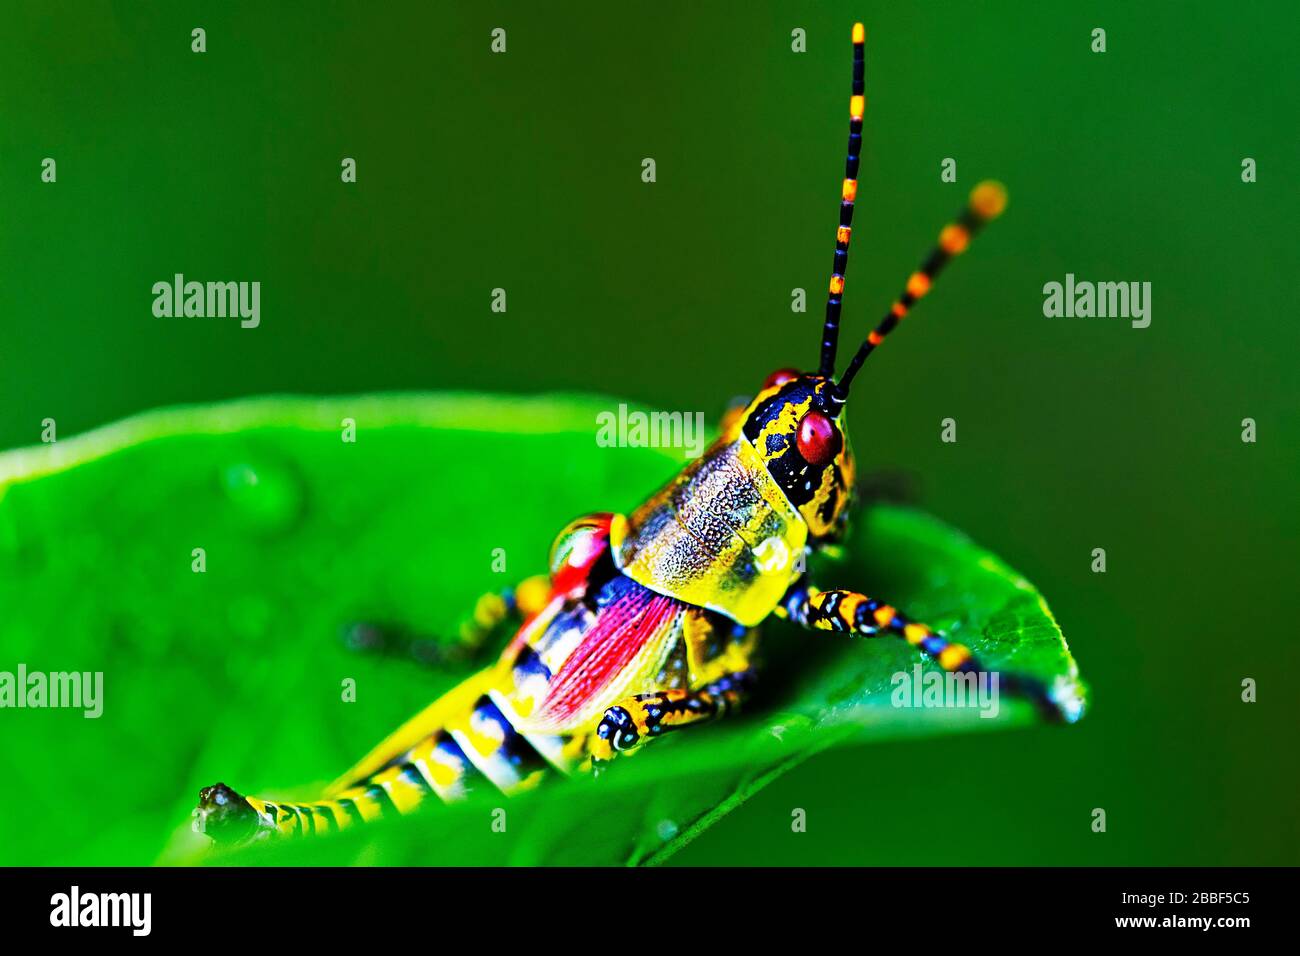 Élégant Grasshopper au sanctuaire de la faune de Militane, Eswatini (Swaziland) Banque D'Images